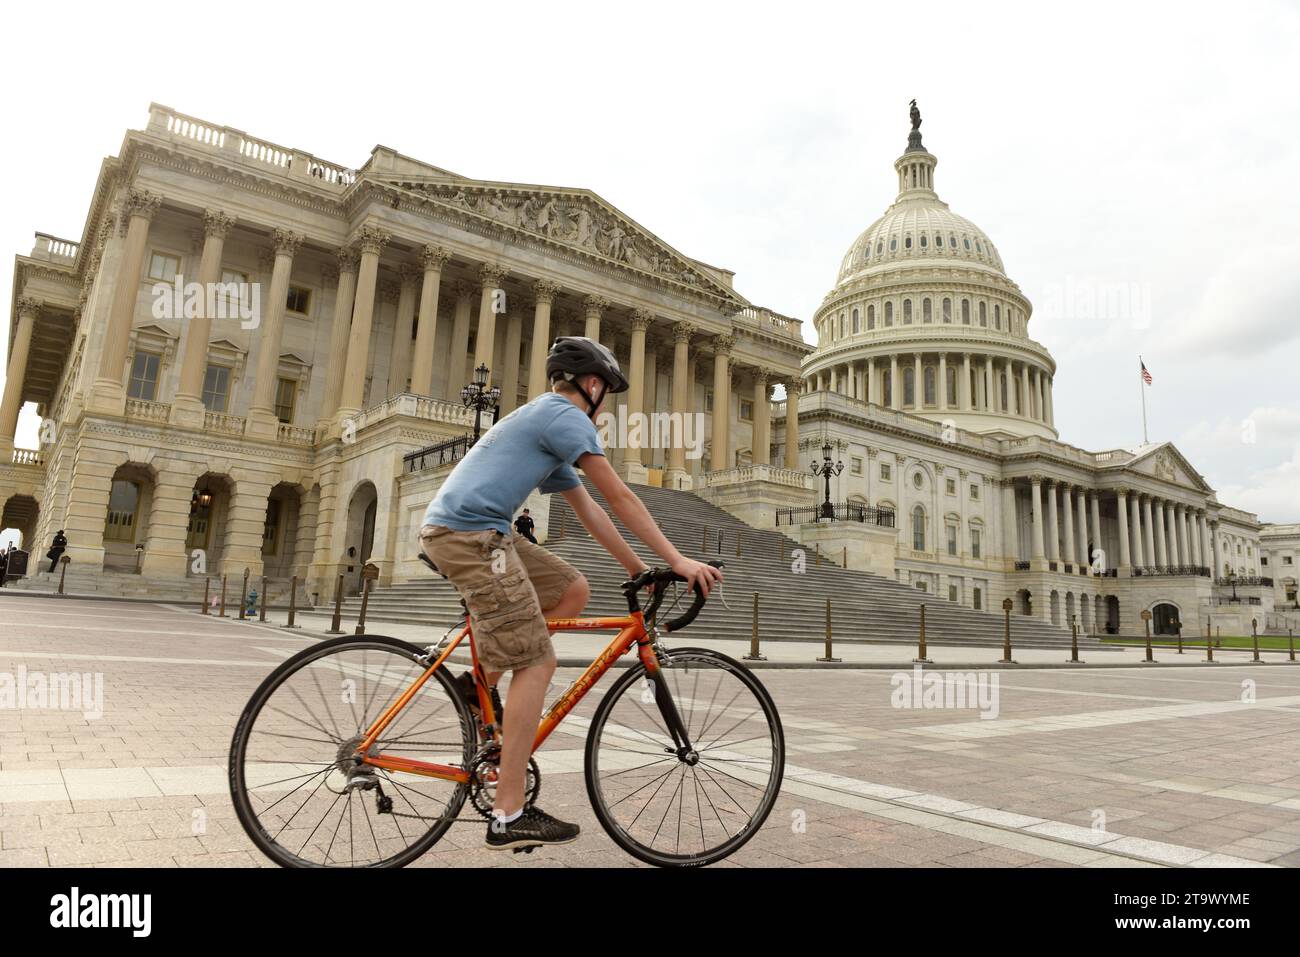 Washington, DC - 31 mai 2018 : cycliste près du Capitole des États-Unis. Banque D'Images